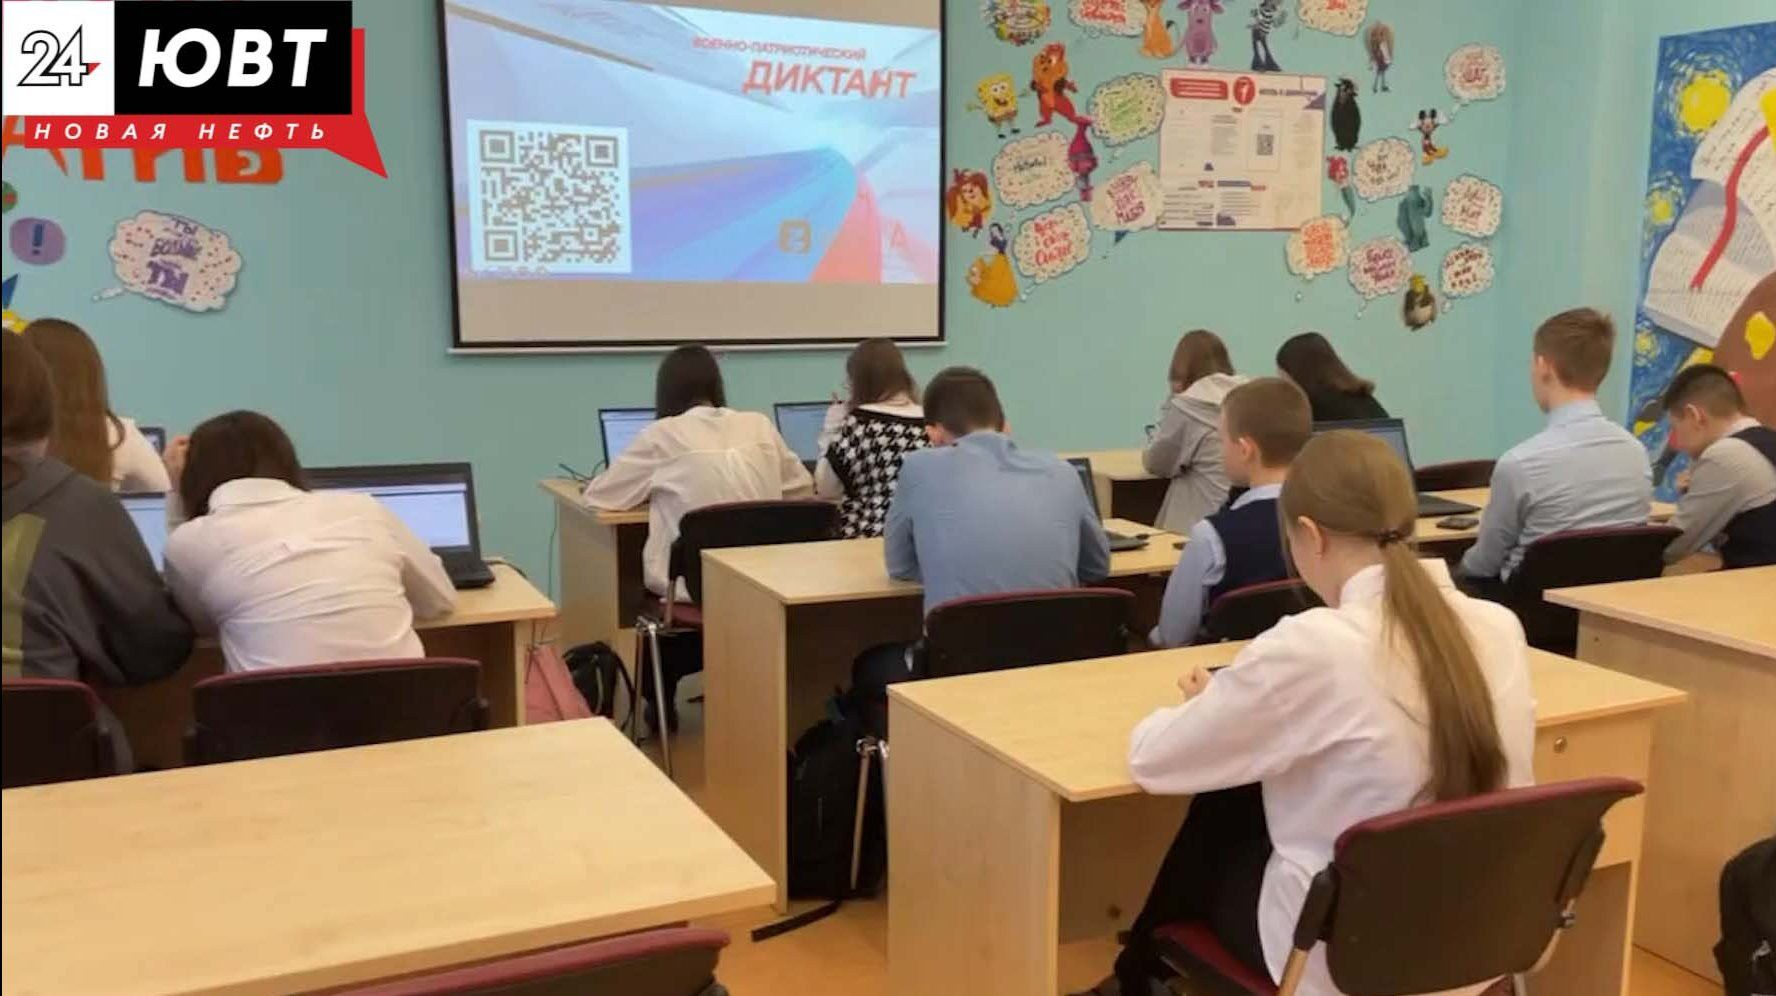 85% жителей считают, что в Татарстане созданы отличные условия для образования детей